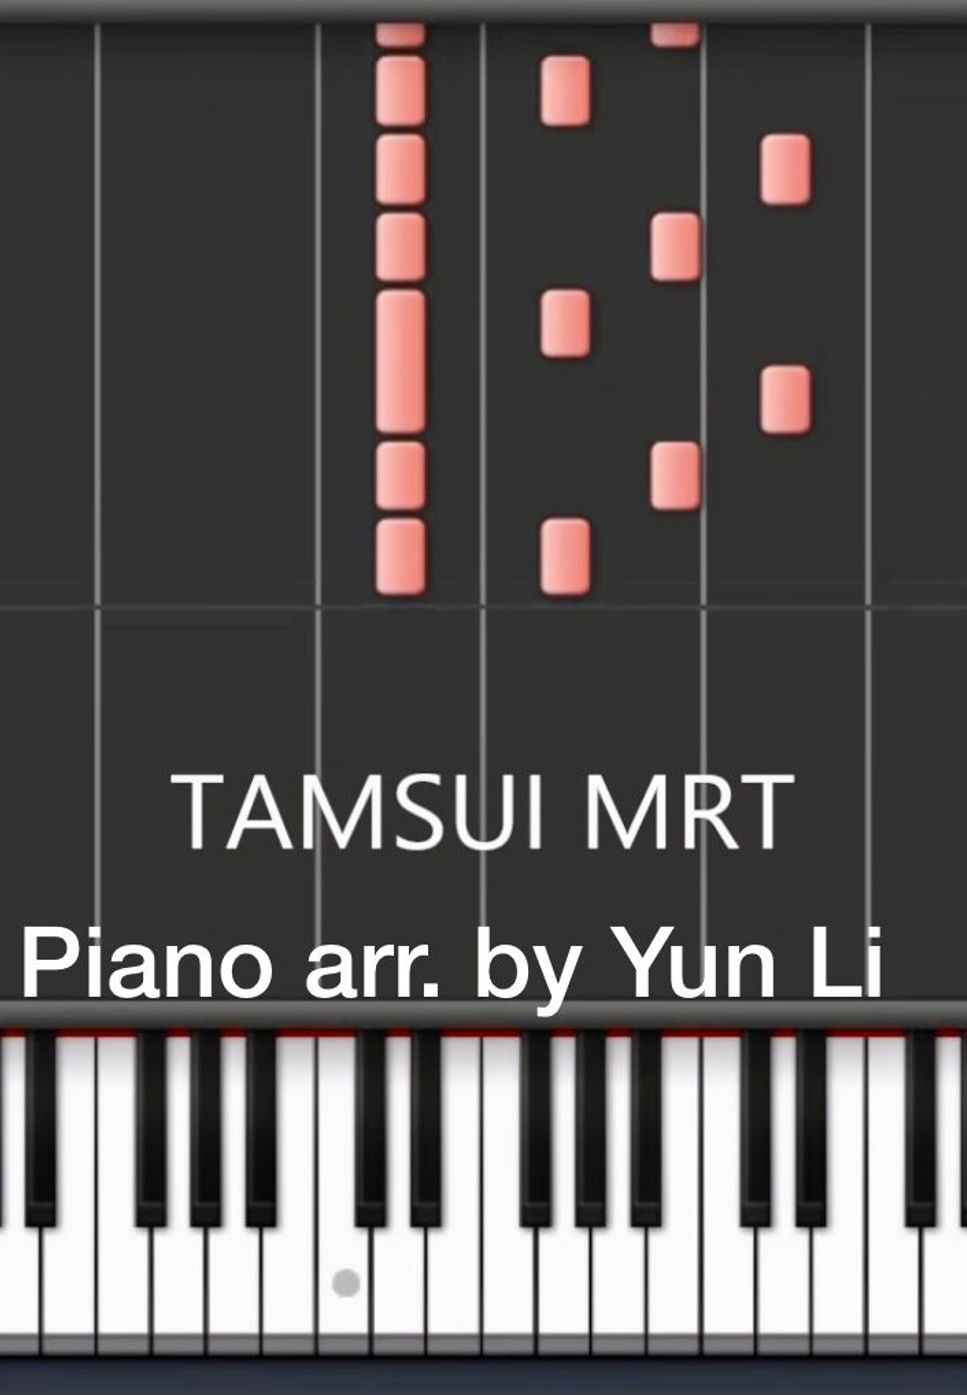 雷光夏 - Tamsui MRT [piano cover] by Yun Li